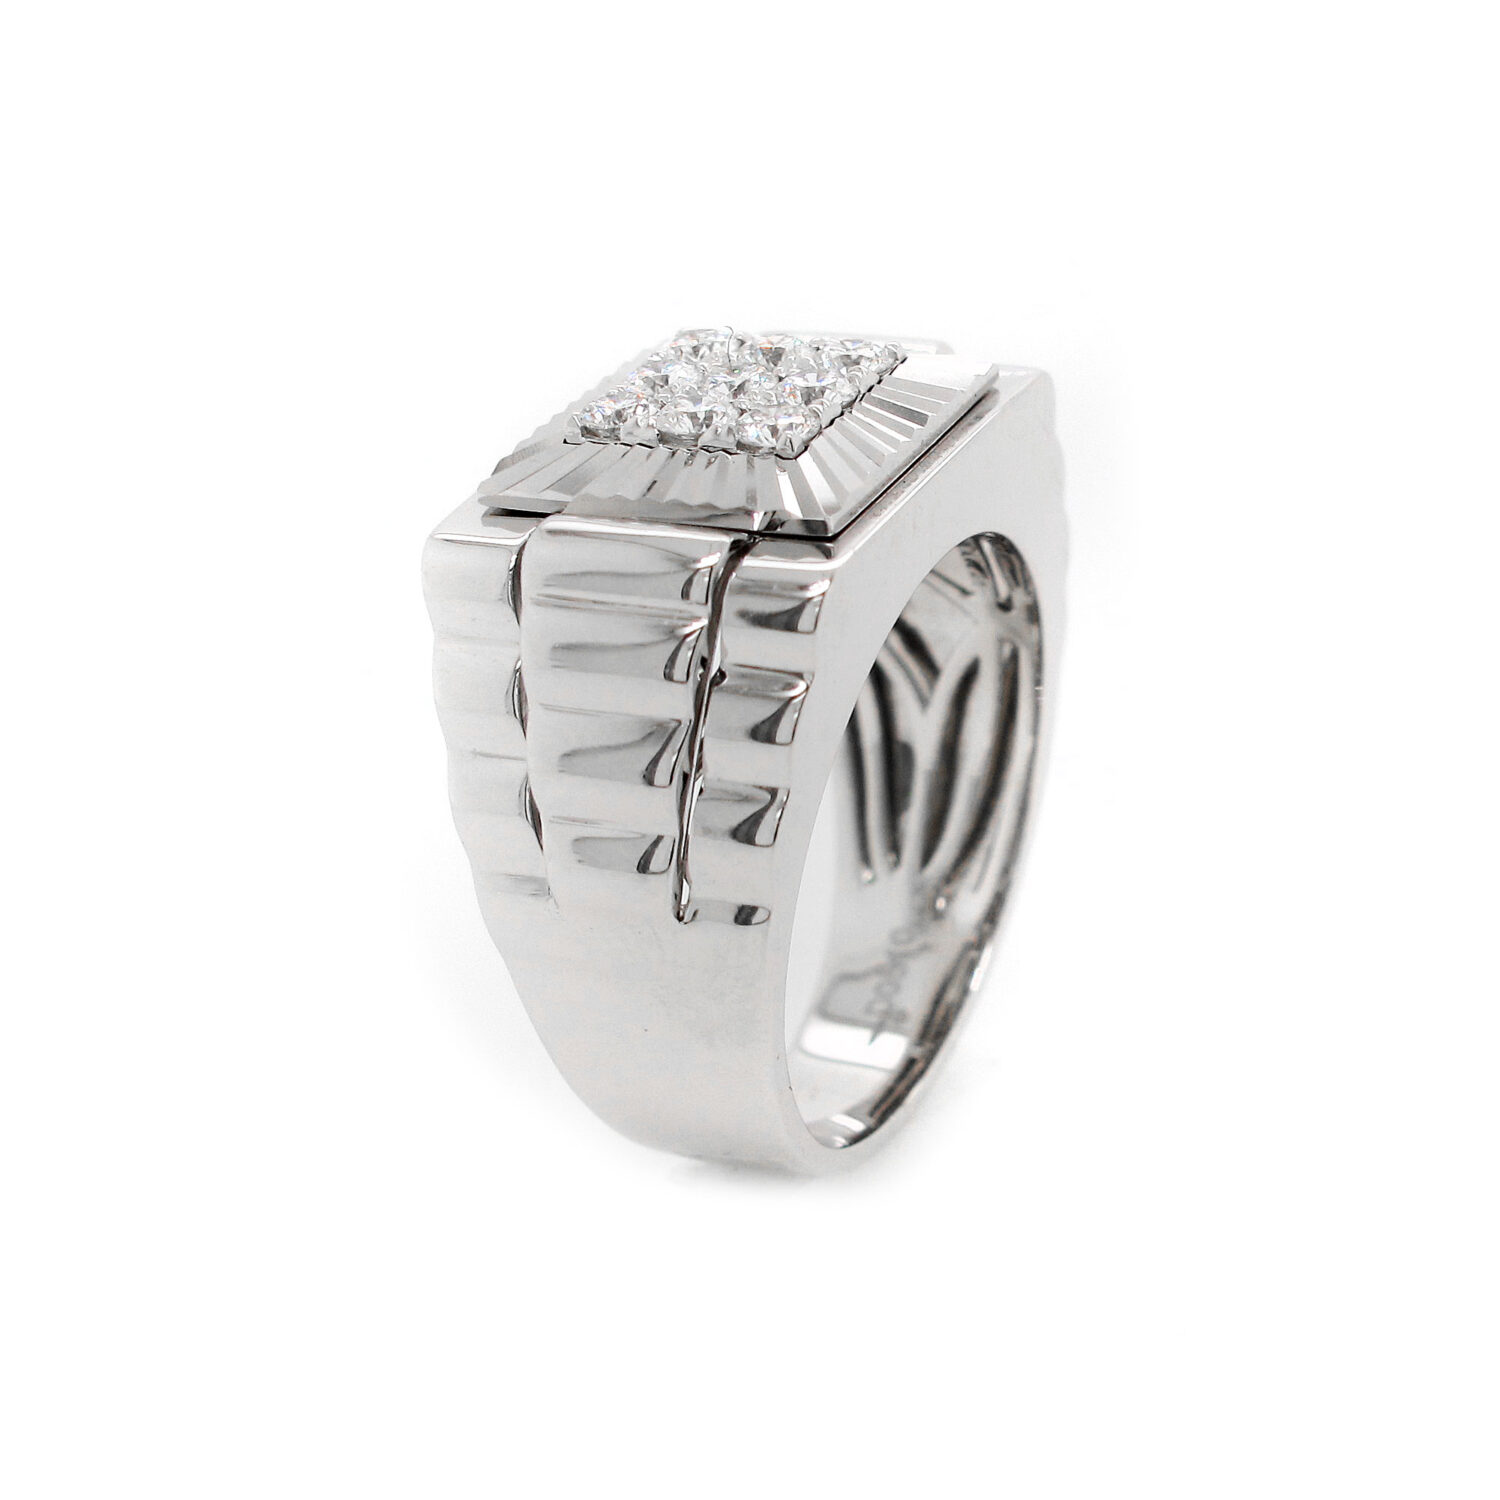 Vogati 0.16 Ct Black Diamond Men's Rolex Ring in Silver-4.0|Amazon.com